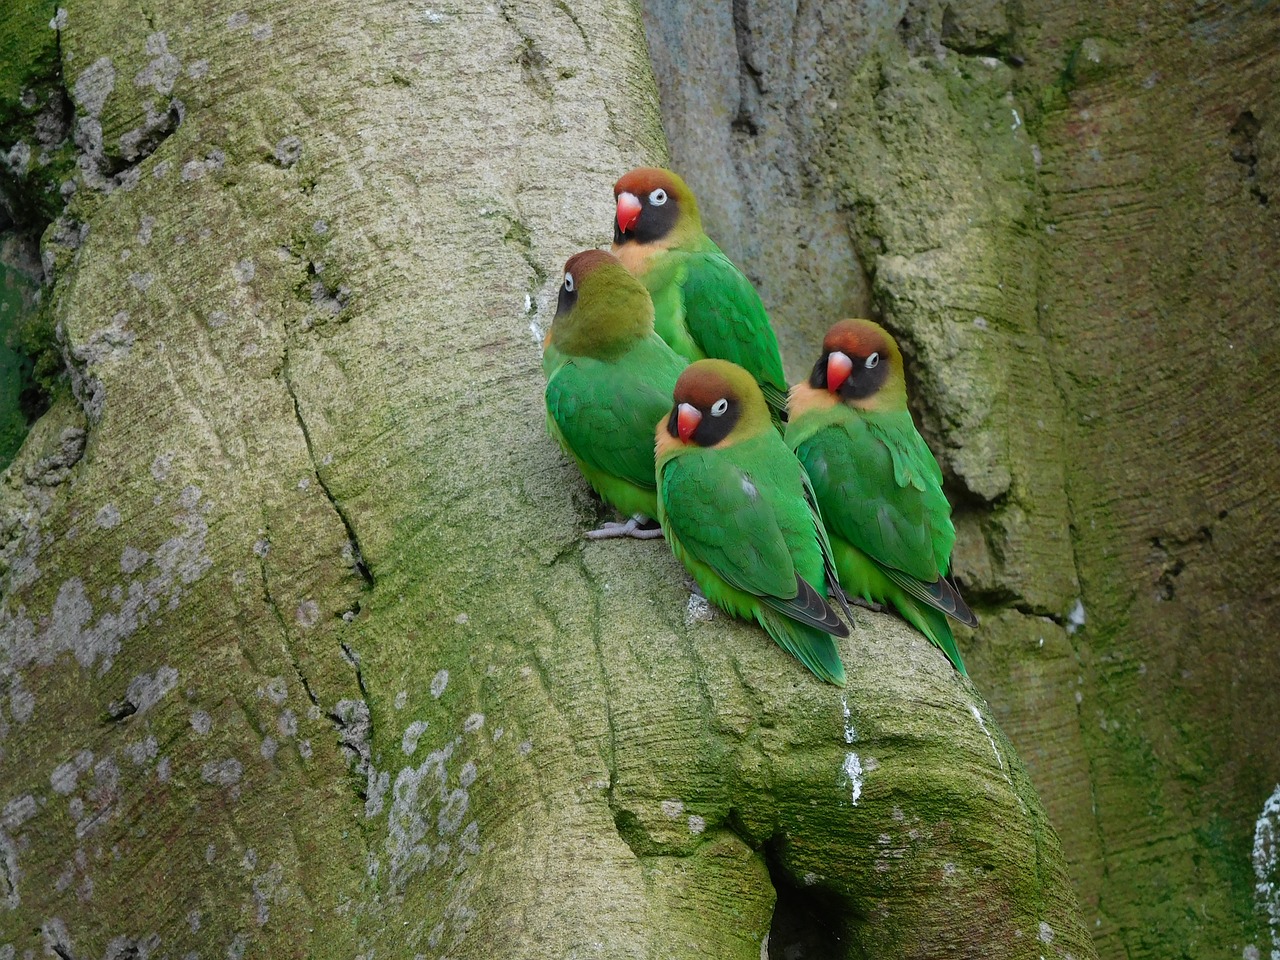 Agapornis – popularna rasa papug występująca w wielu odmianach kolorystycznych